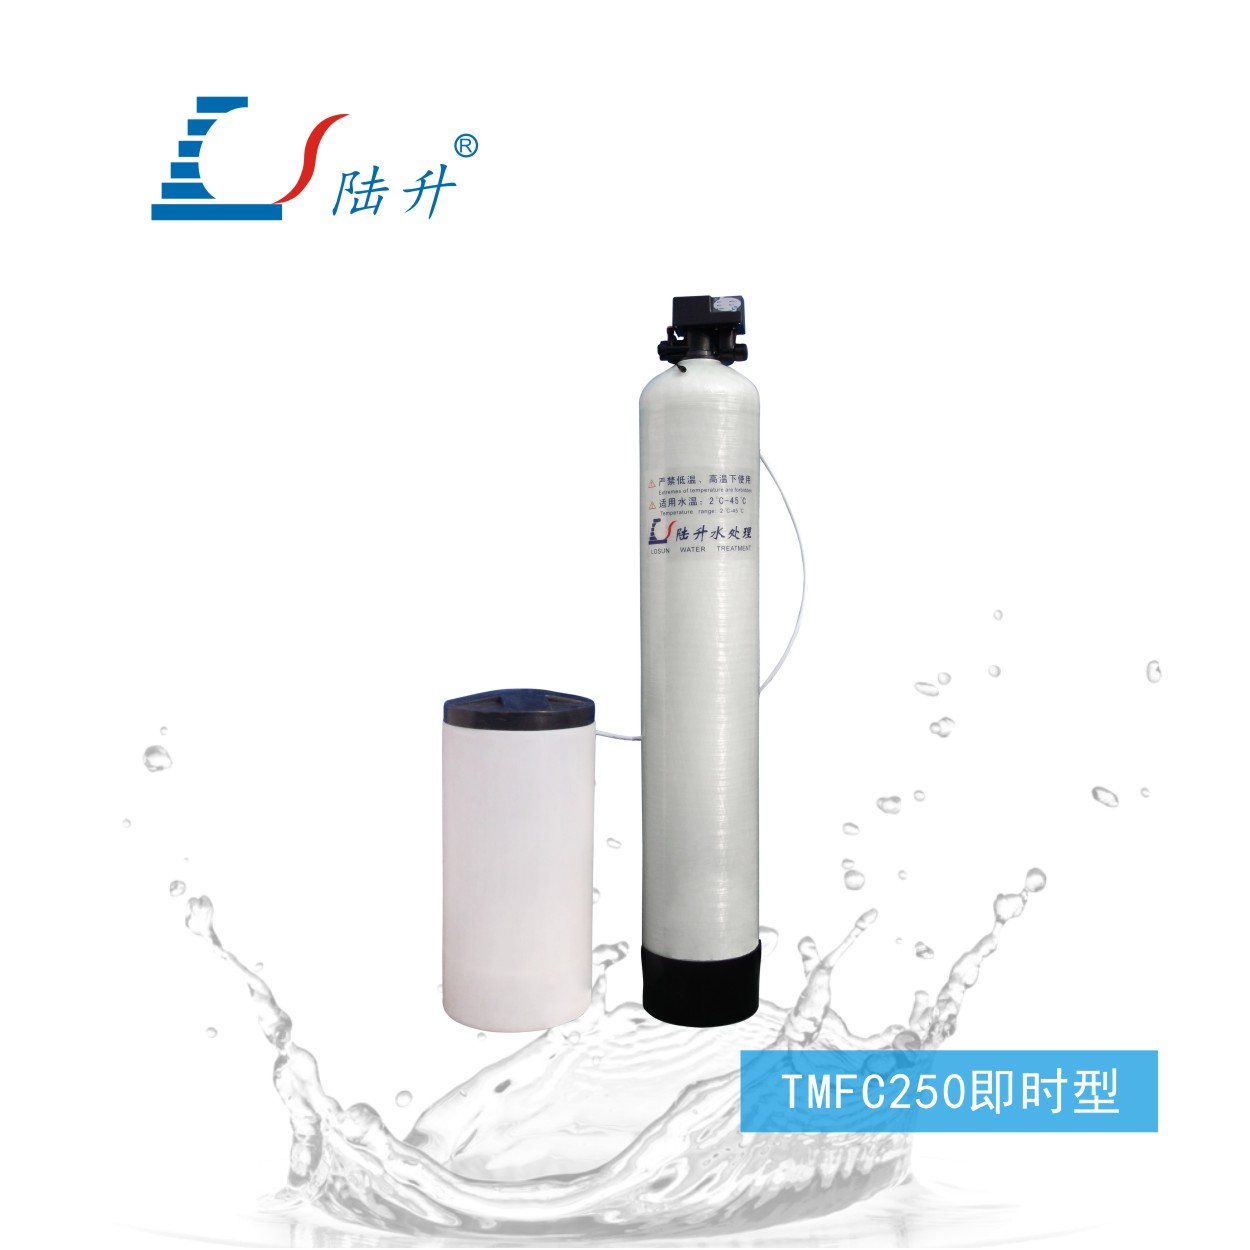 TMFC250即时型半自动软化水